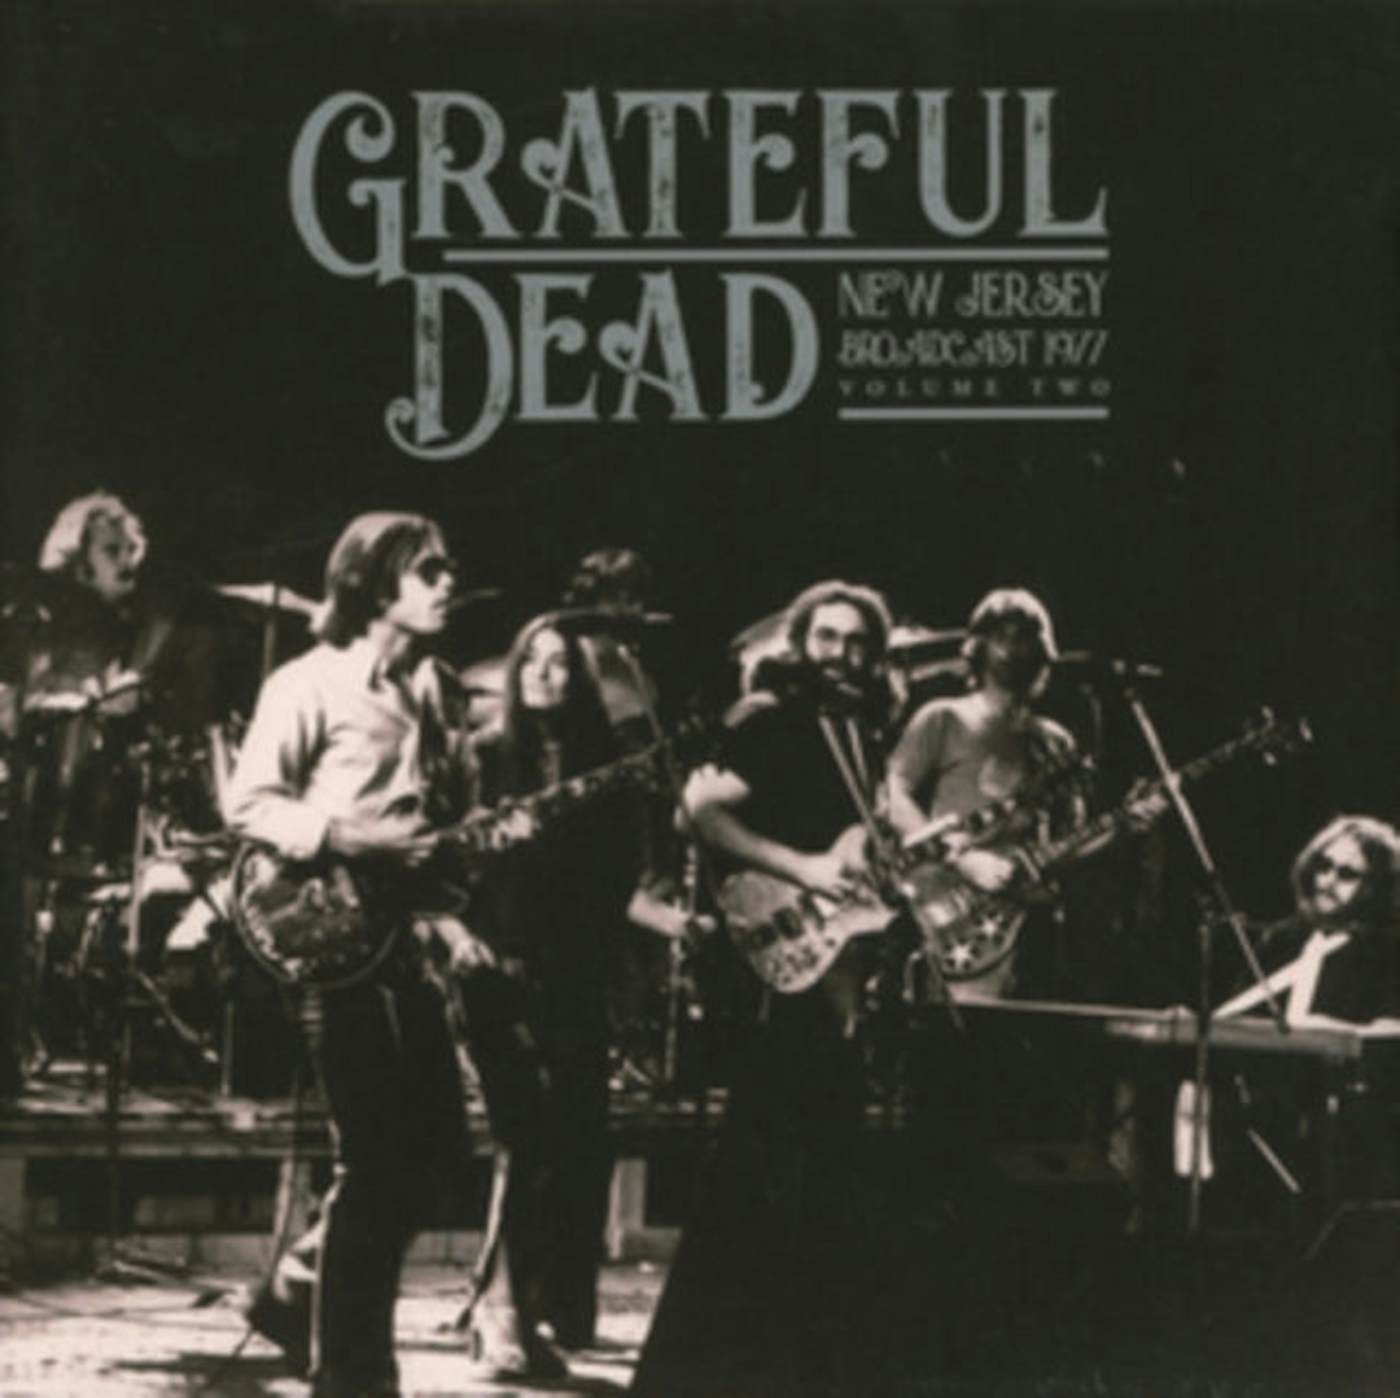 diagram Parcel Akvarium Grateful Dead LP - New Jersey Broadcast 1977 Vol. 2